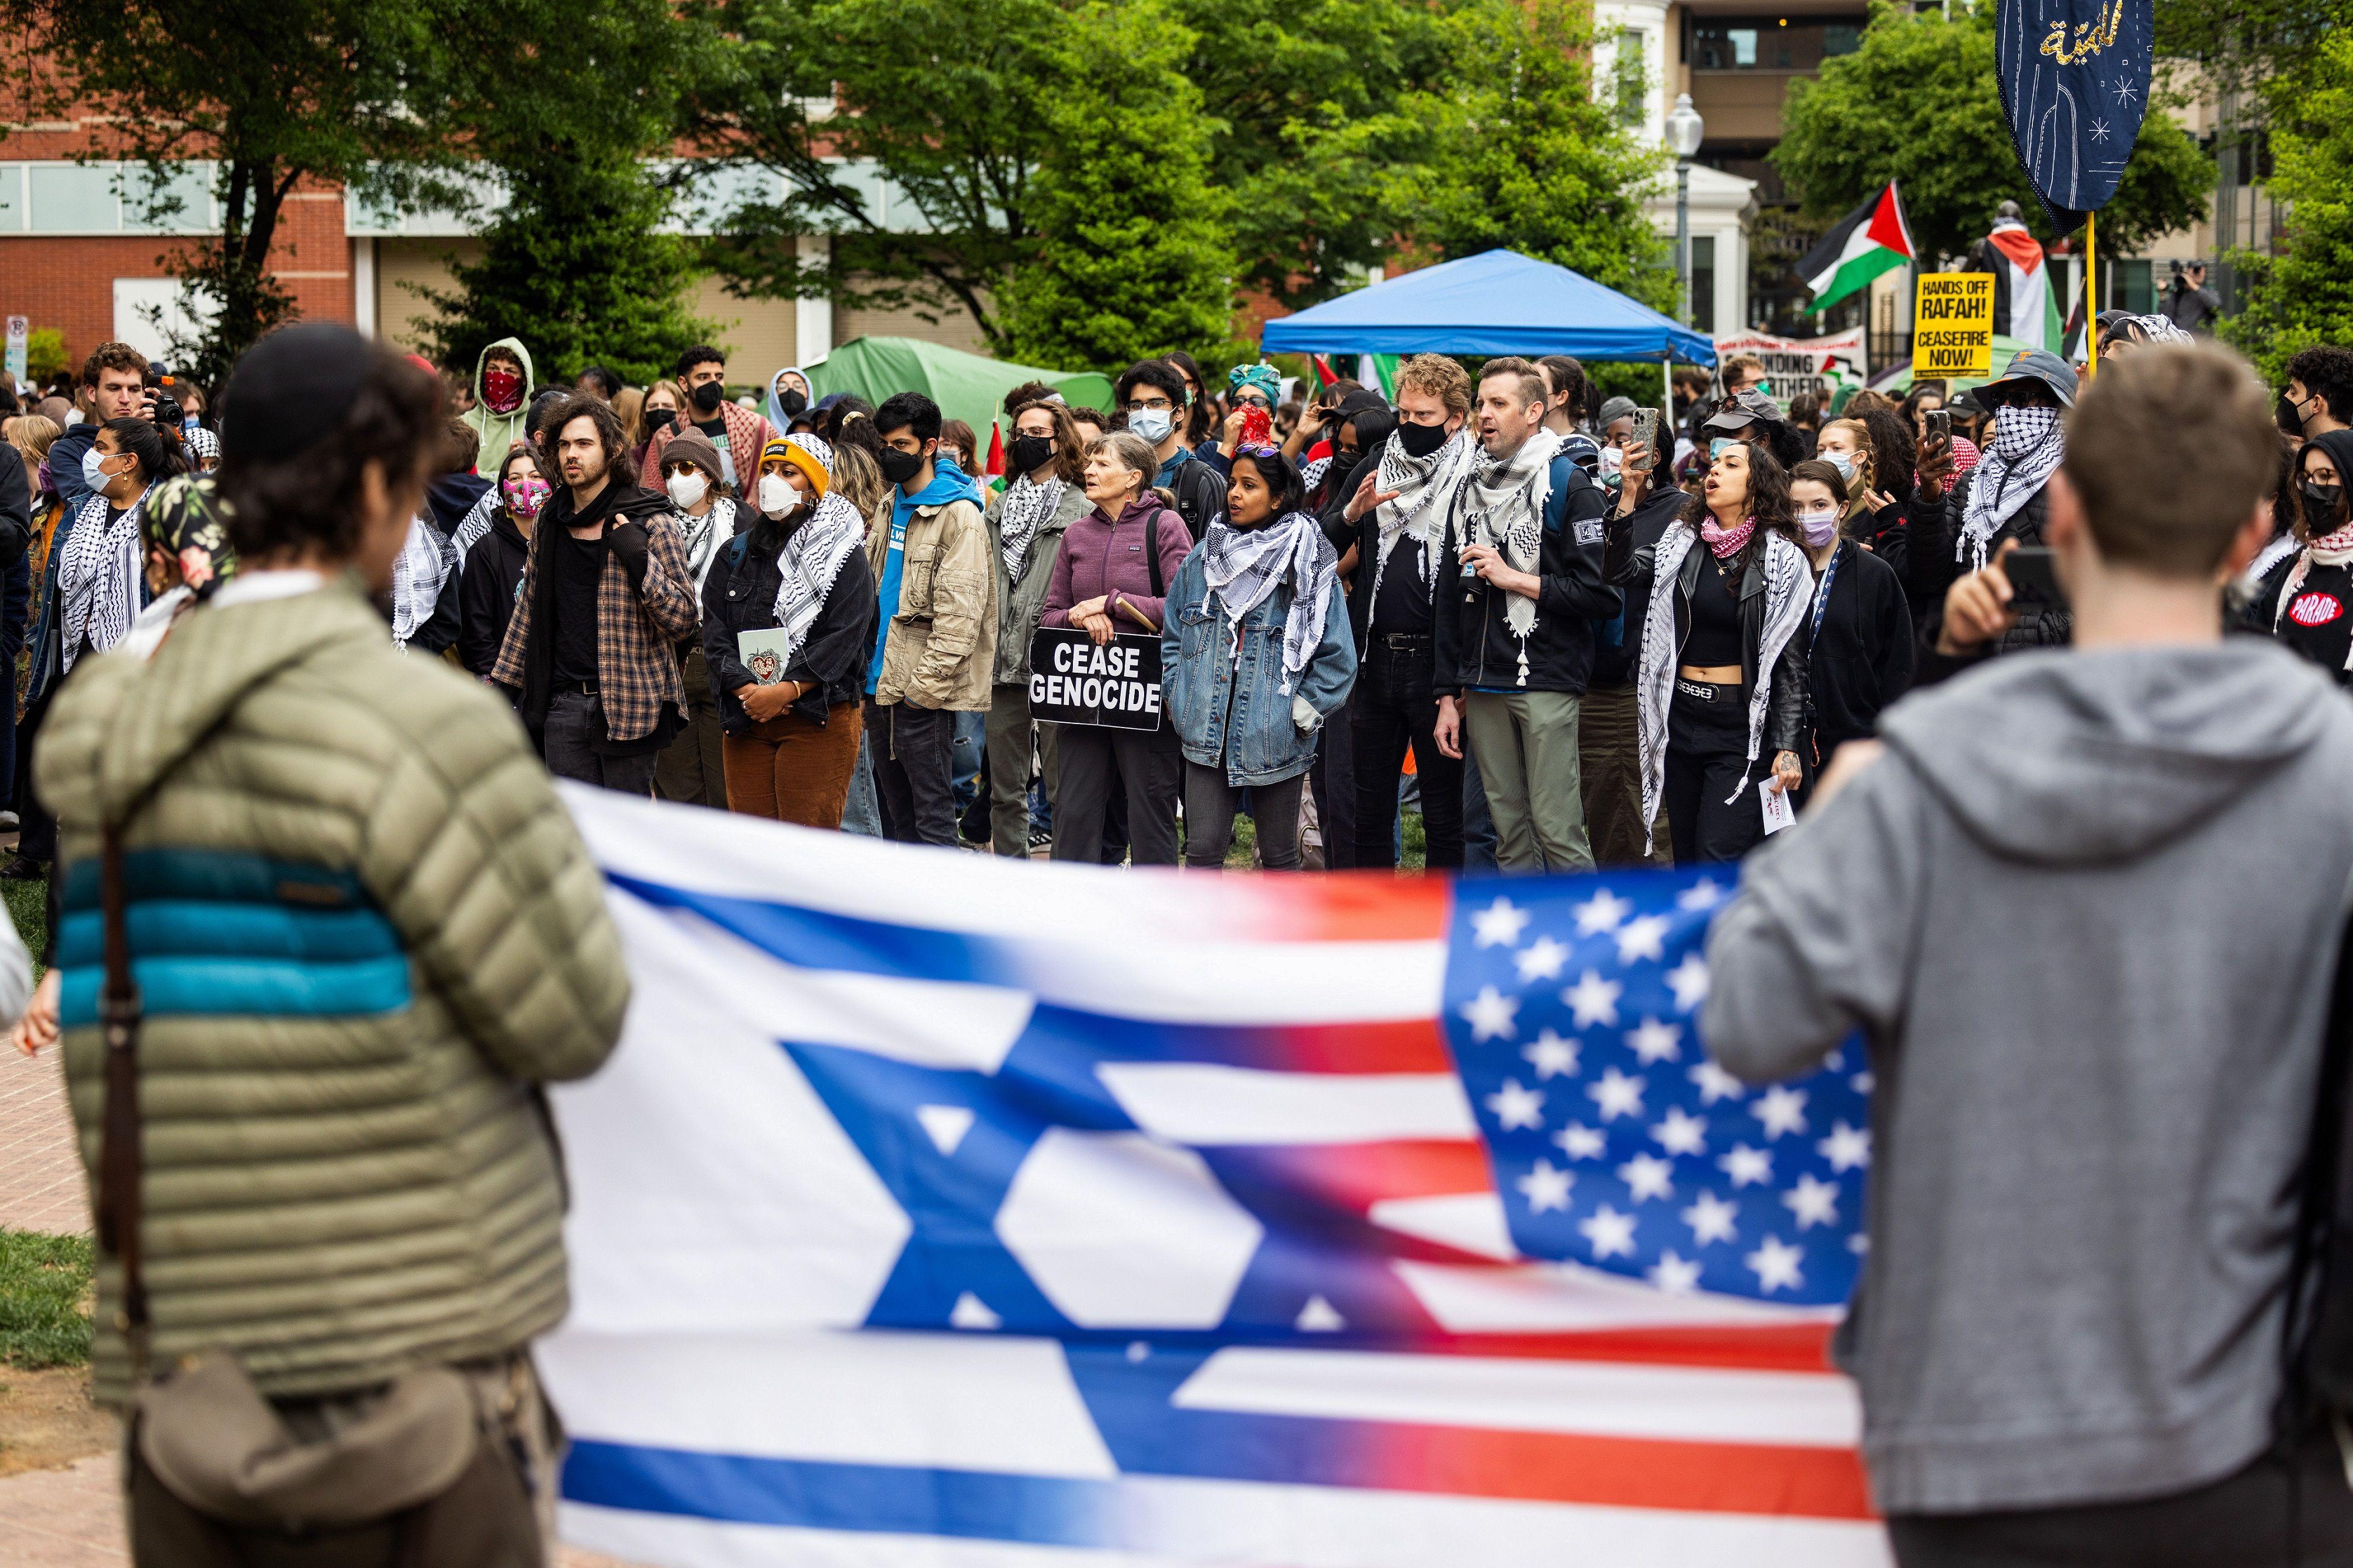 اثنان من أنصار إسرائيل يحملان العلم الأميركي والإسرائيلي أمام المتظاهرين المؤيدين للفلسطينيين في جامعة جورج واشنطن